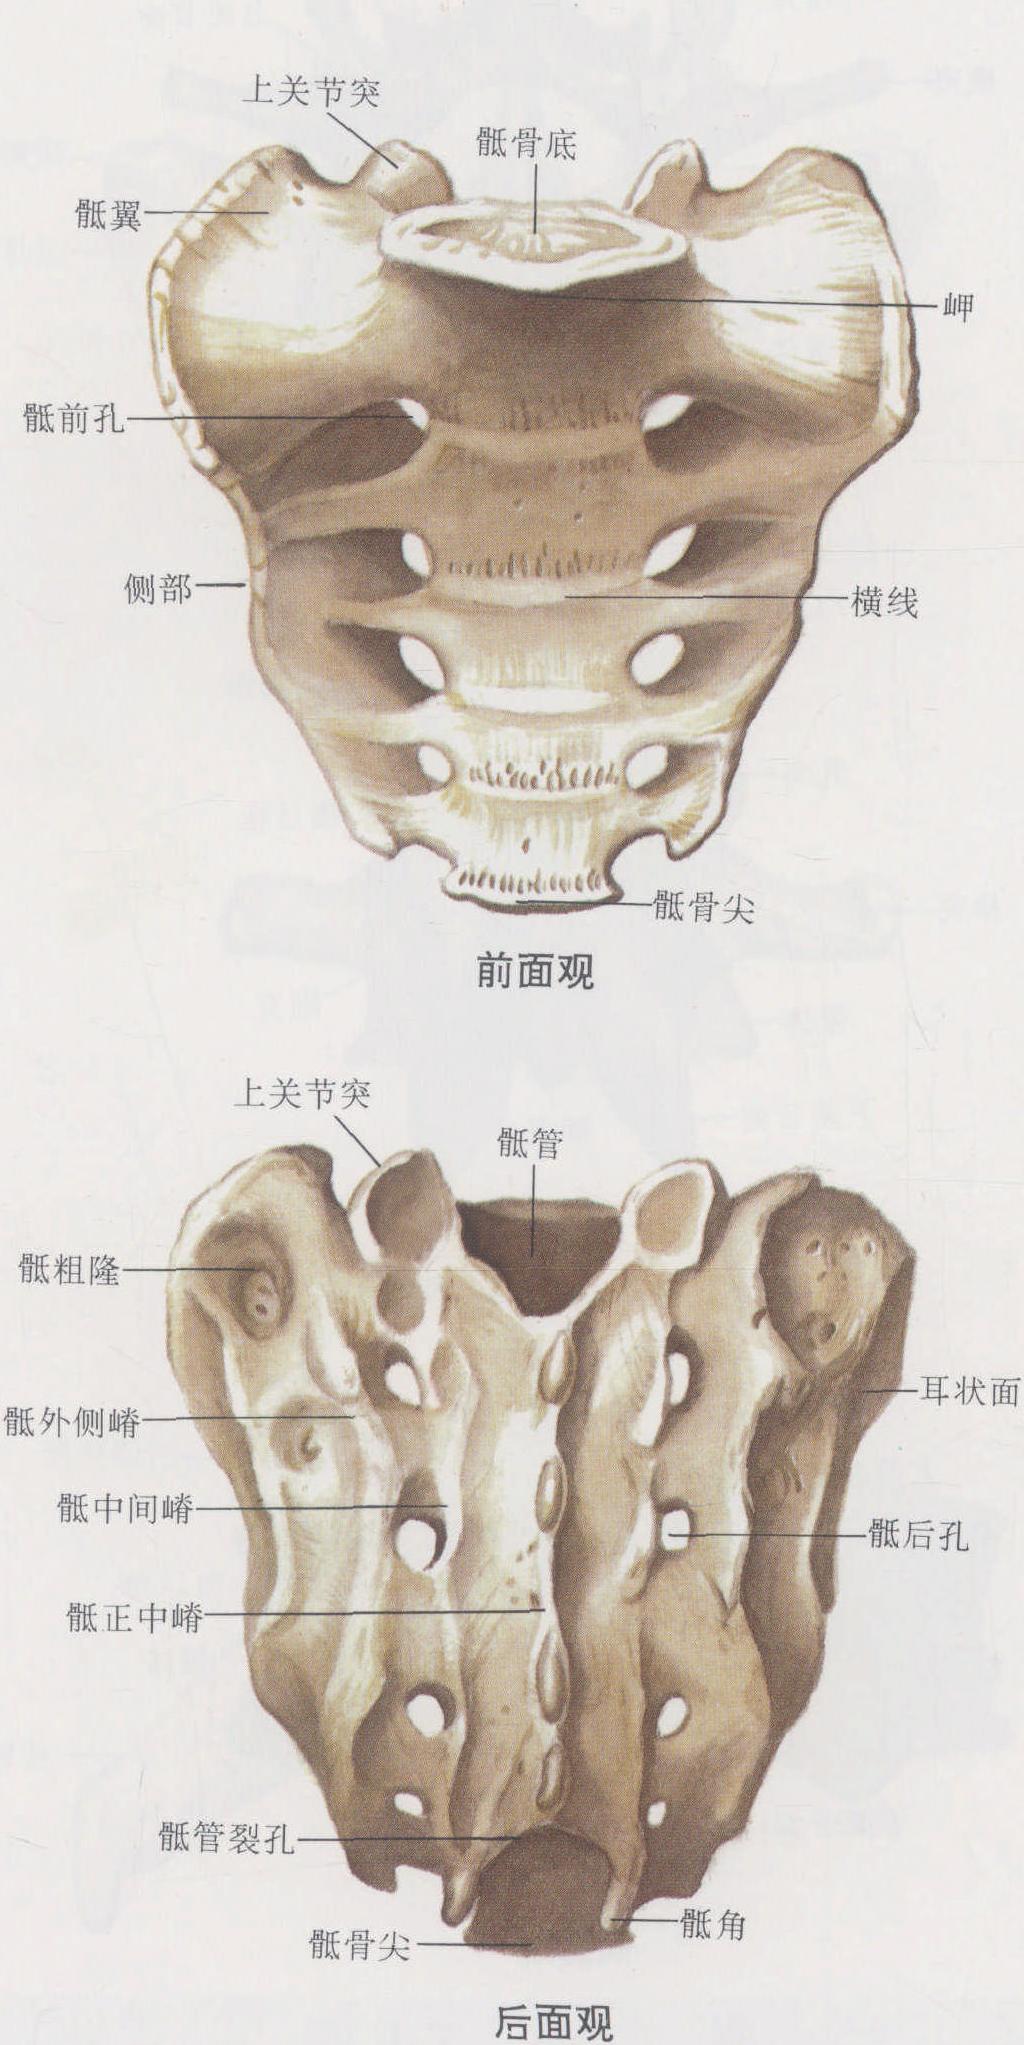 图4-9 骶骨